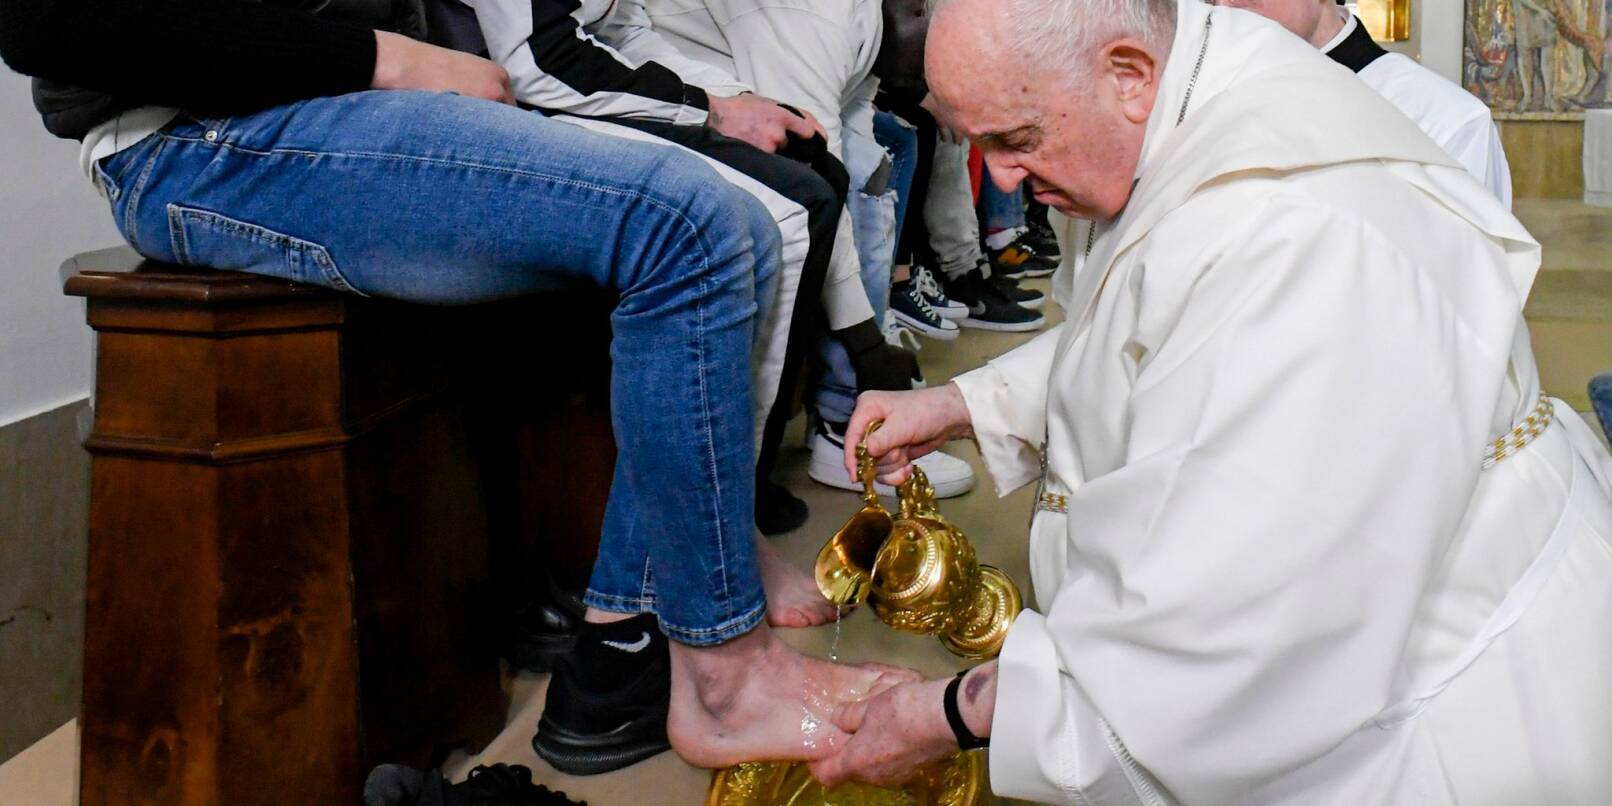 Papst Franziskus hat am Gründonnerstag ein Jugendgefängnis in Rom besucht. Das Oberhaupt der katholischen Kirche feierte die traditionelle Abendmahlmesse mit rund 100 Insassen und Wärtern. Anschließend wusch und küsste er zwölf Inhaftierten die Füße.